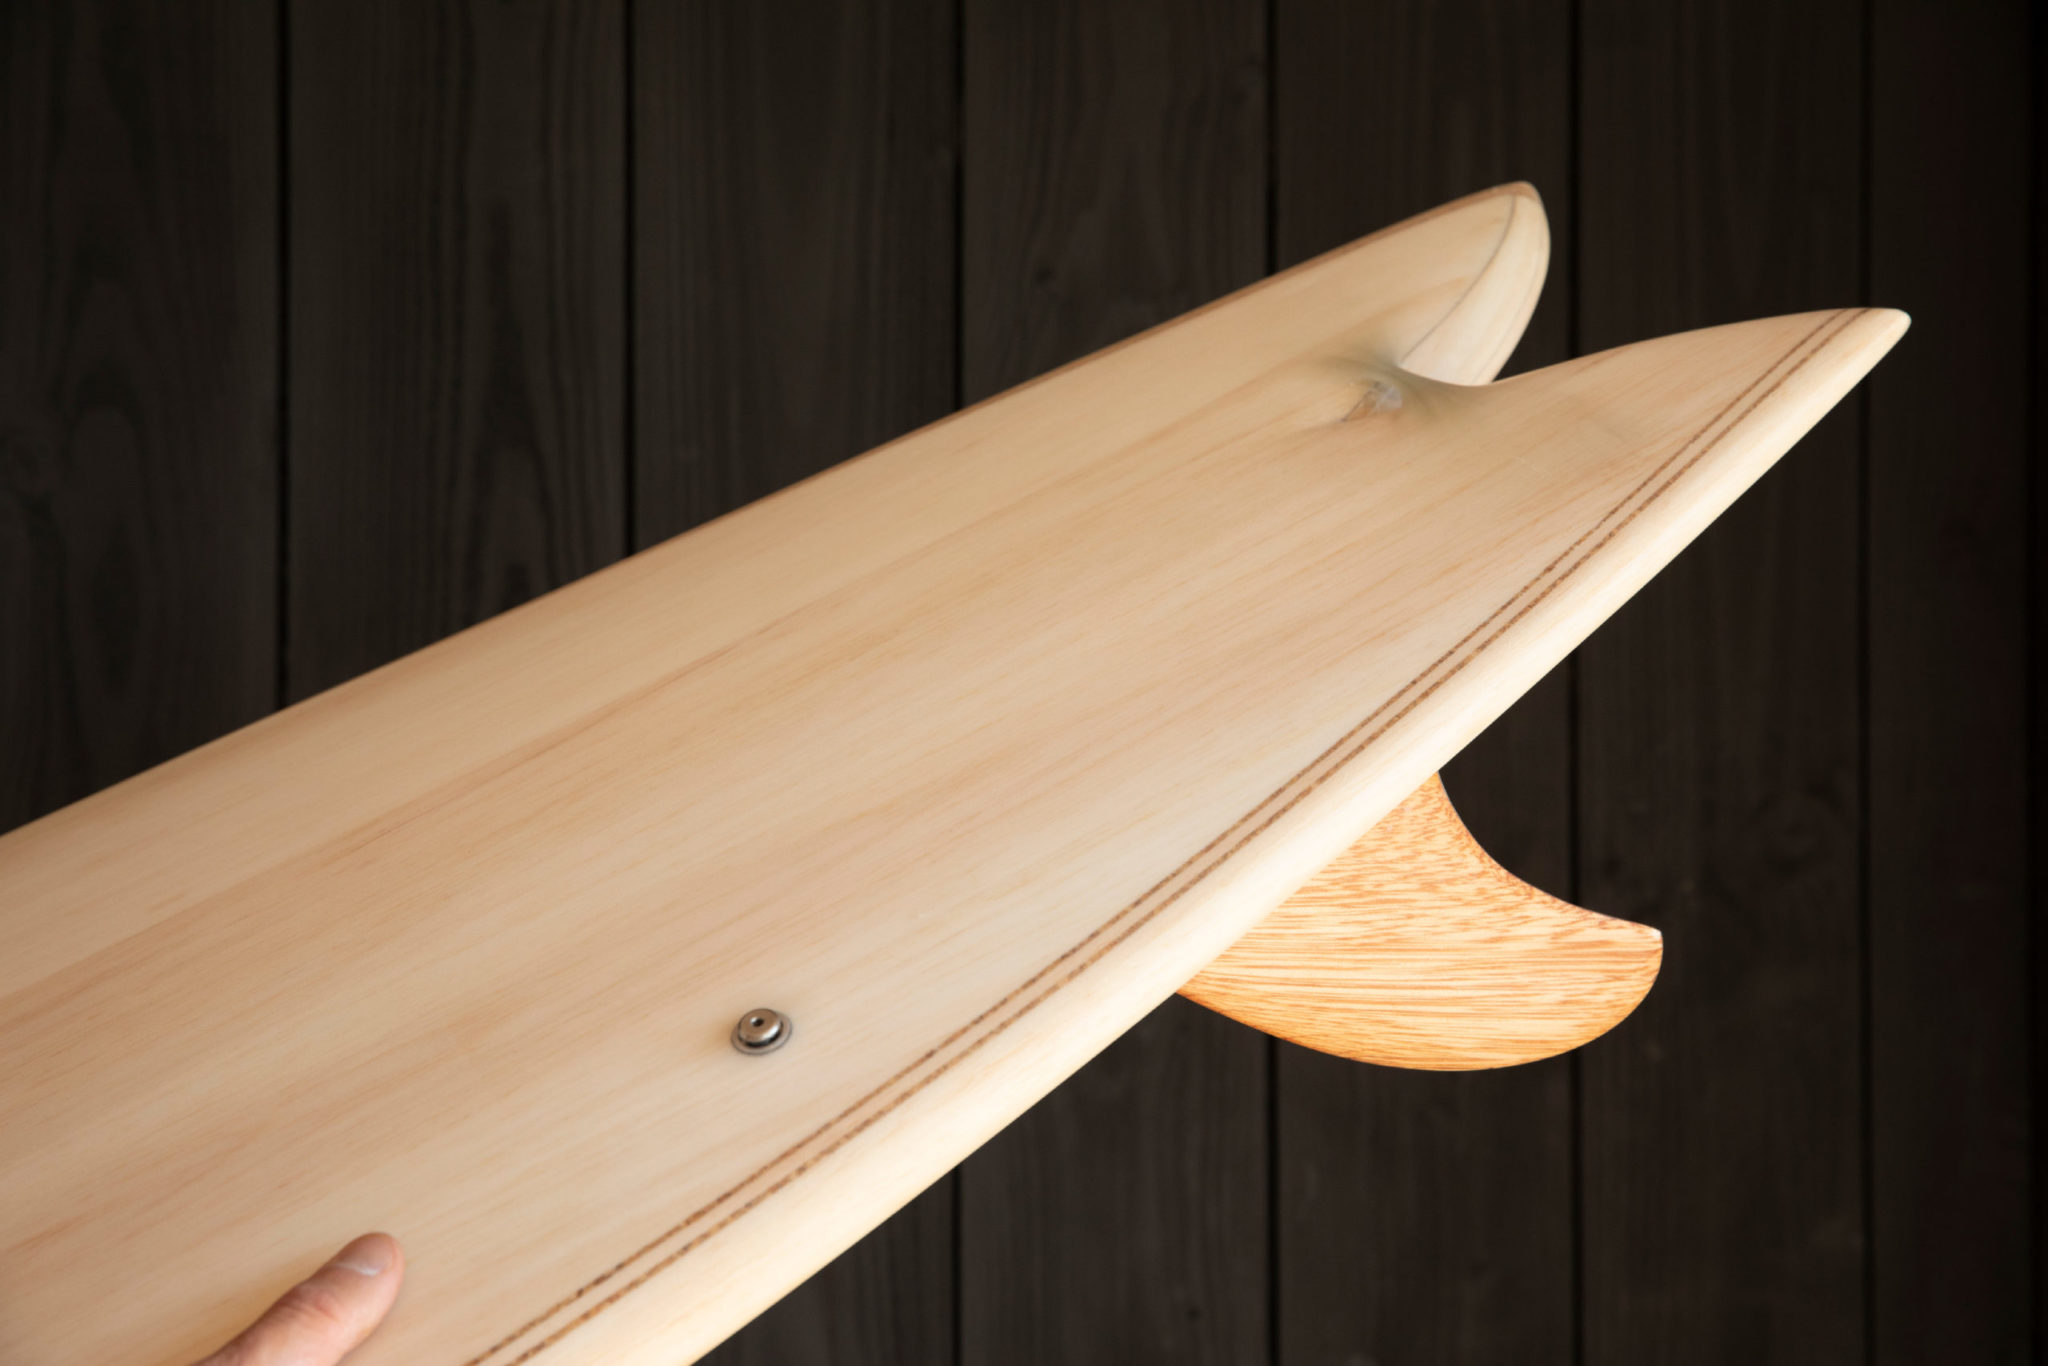 cachalot surfboards artisan hand shaper surf bois hollow wooden hareng julien Mavier